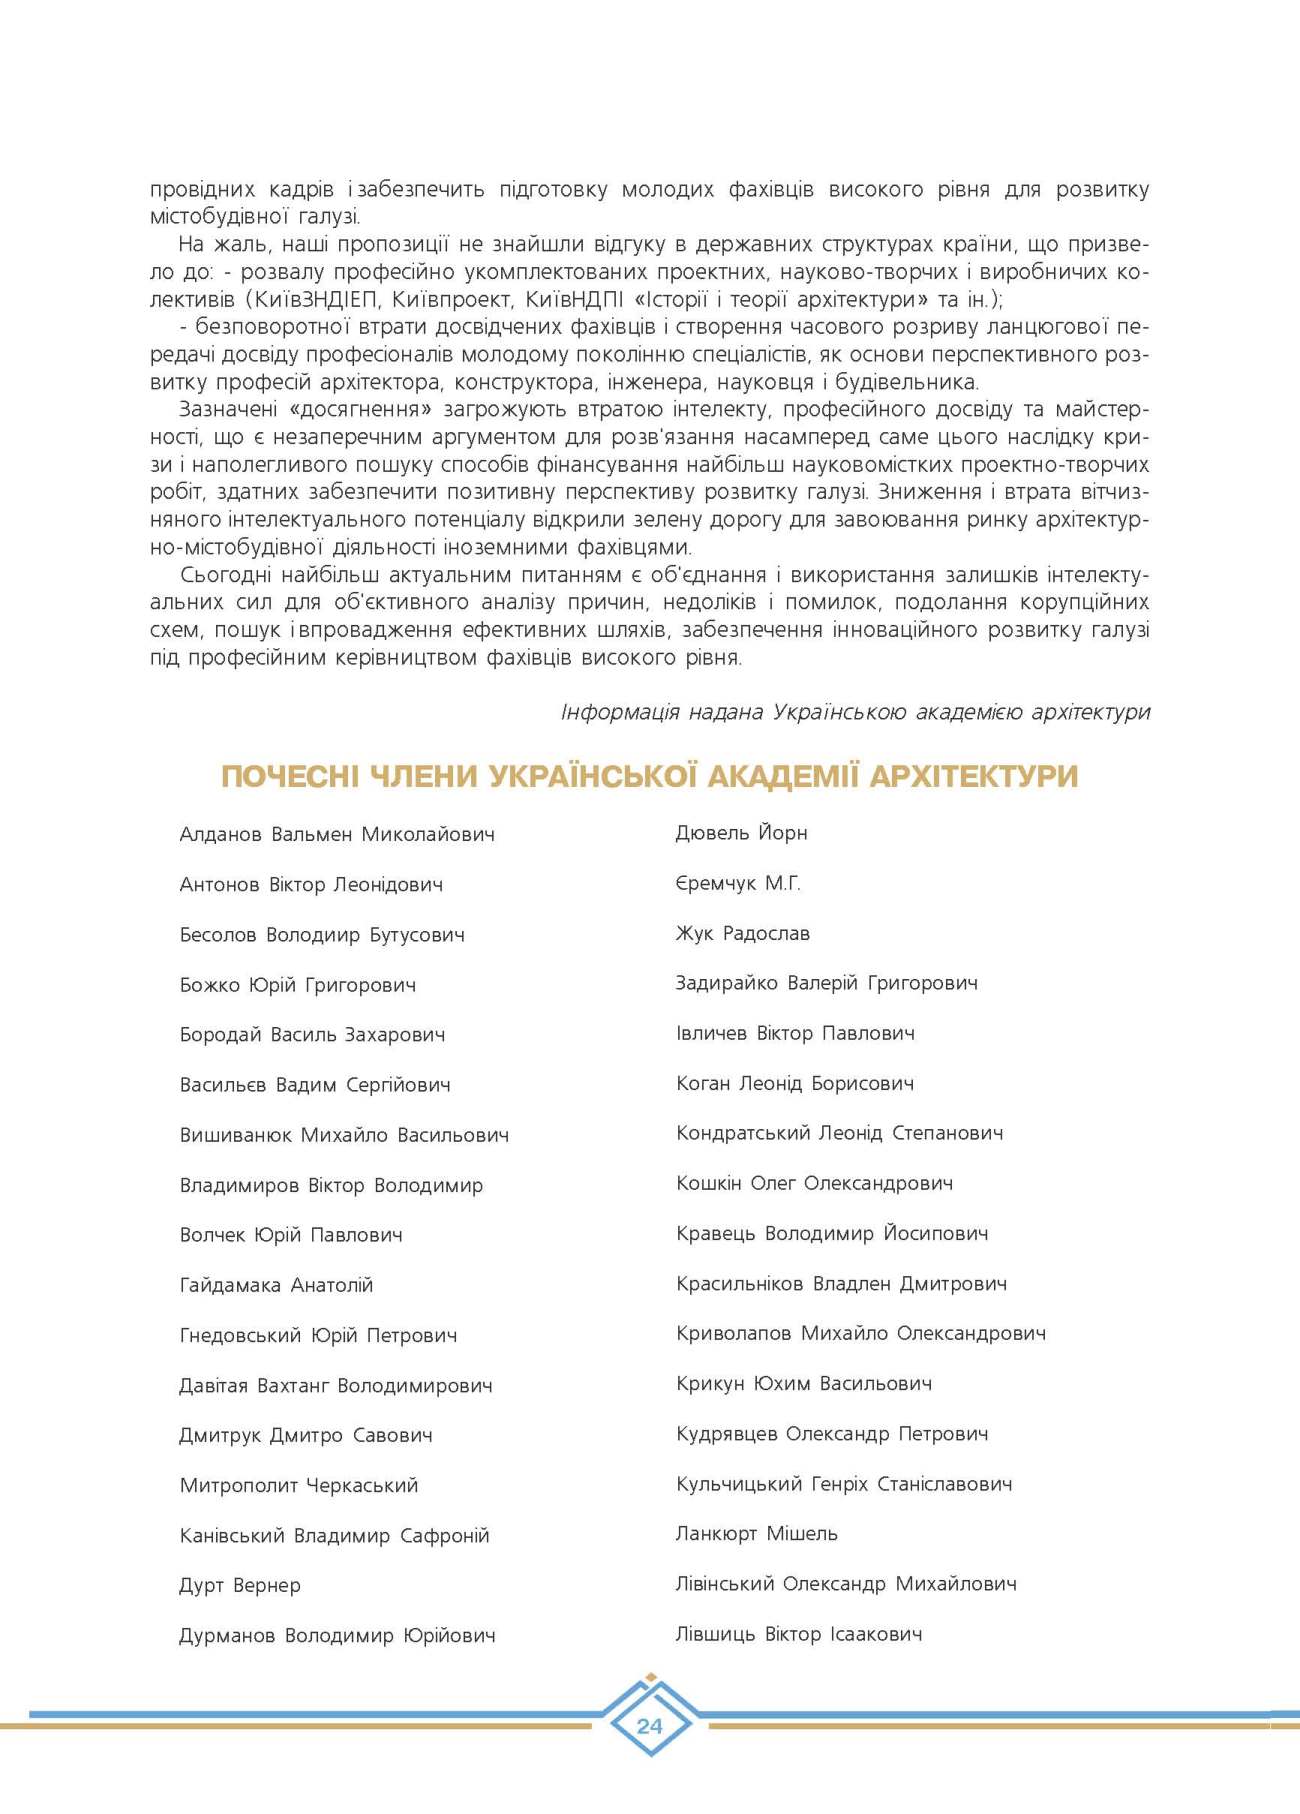 Почесні члени Української академії архітектури